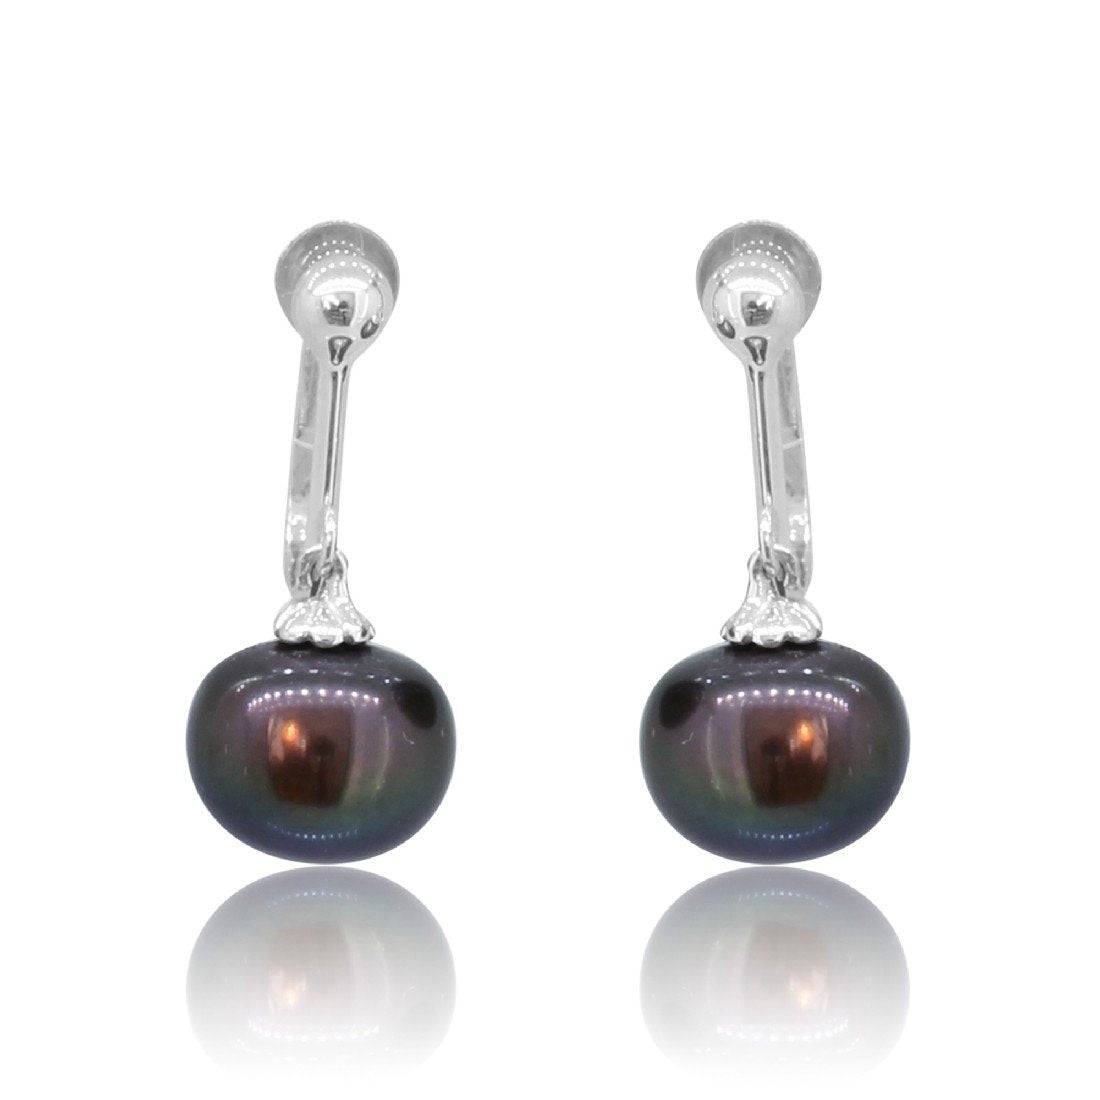 Sterling Silver Fresh water pearls screw on earrings - Masterpiece Jewellery Opal & Gems Sydney Australia | Online Shop